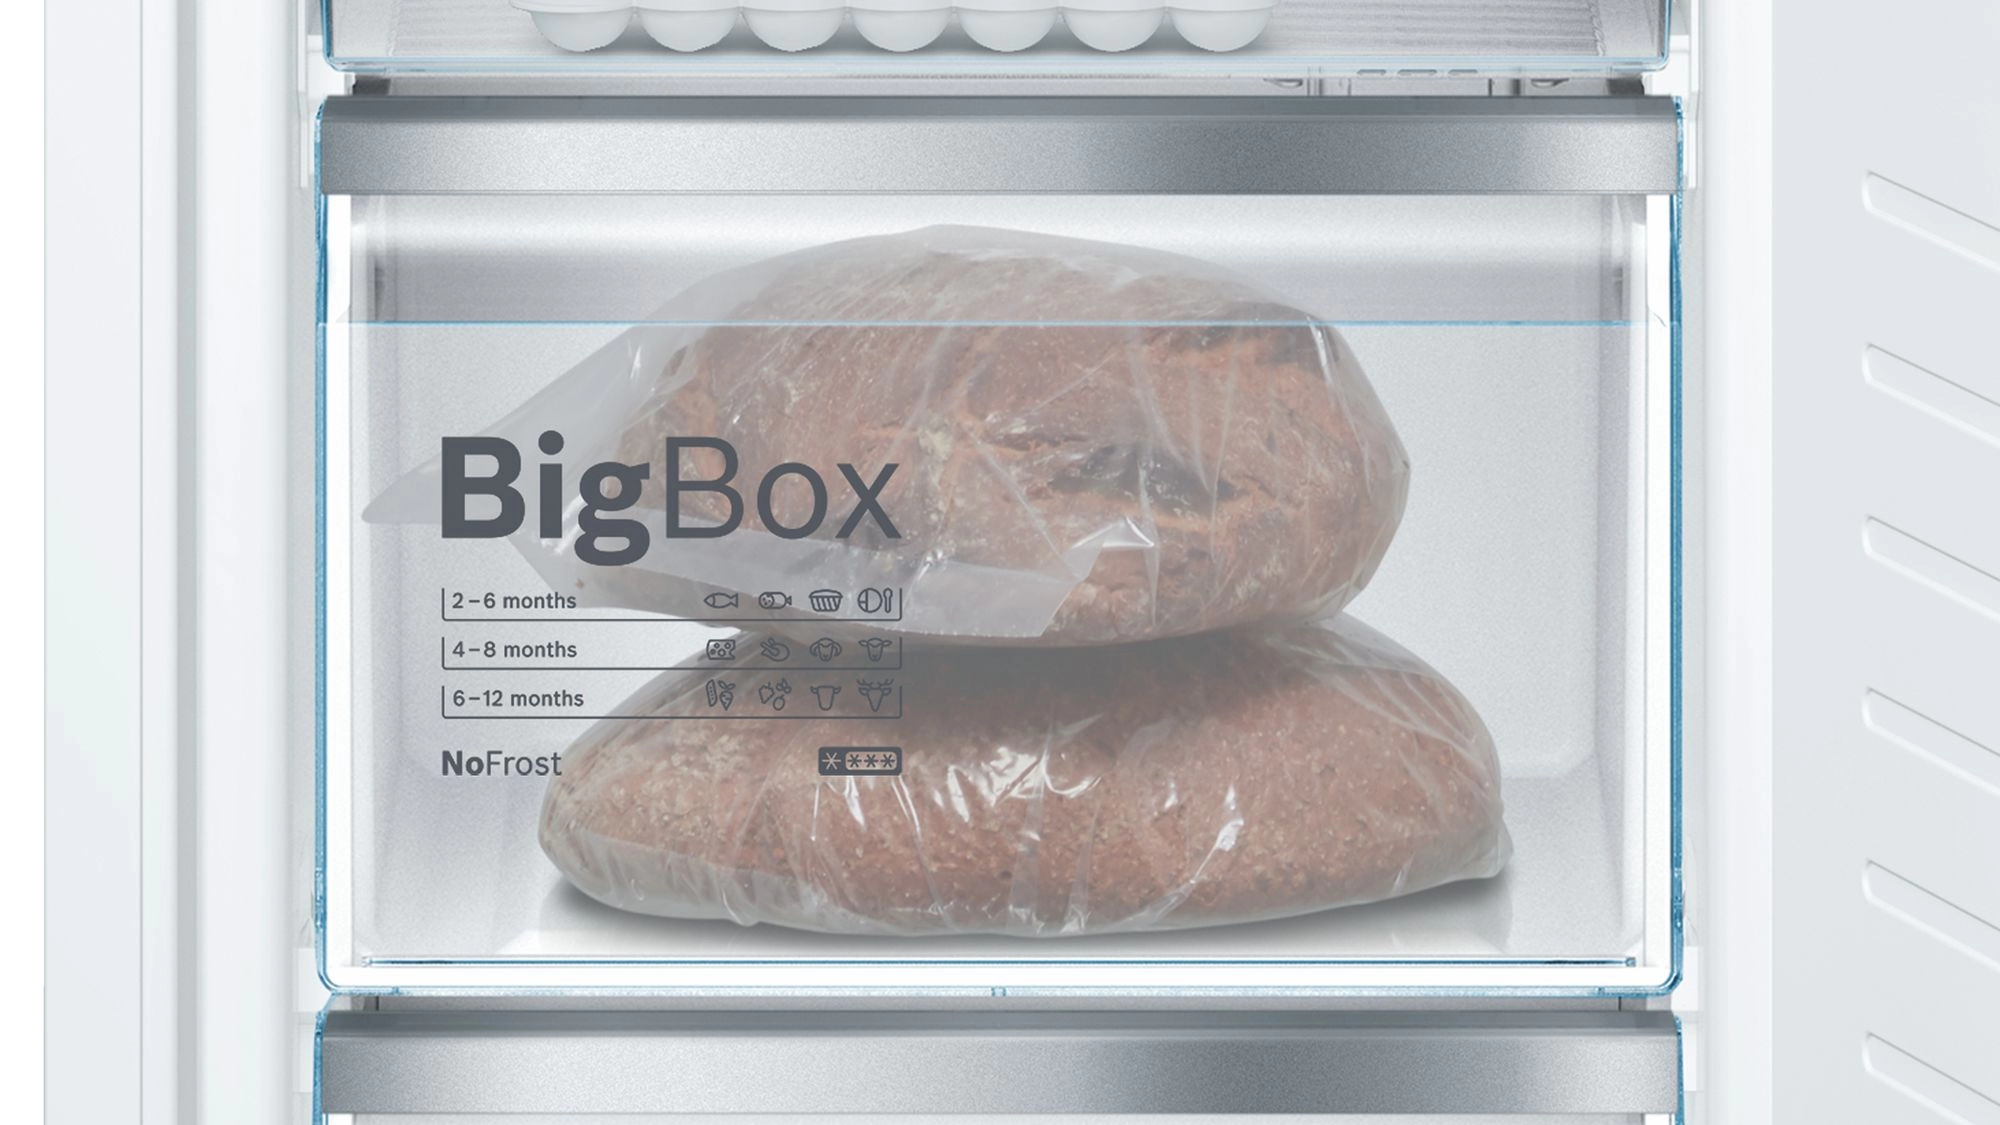 Встраиваемый холодильник Bosch KIN86AF30, 255 л, 177 см, A++, Белый